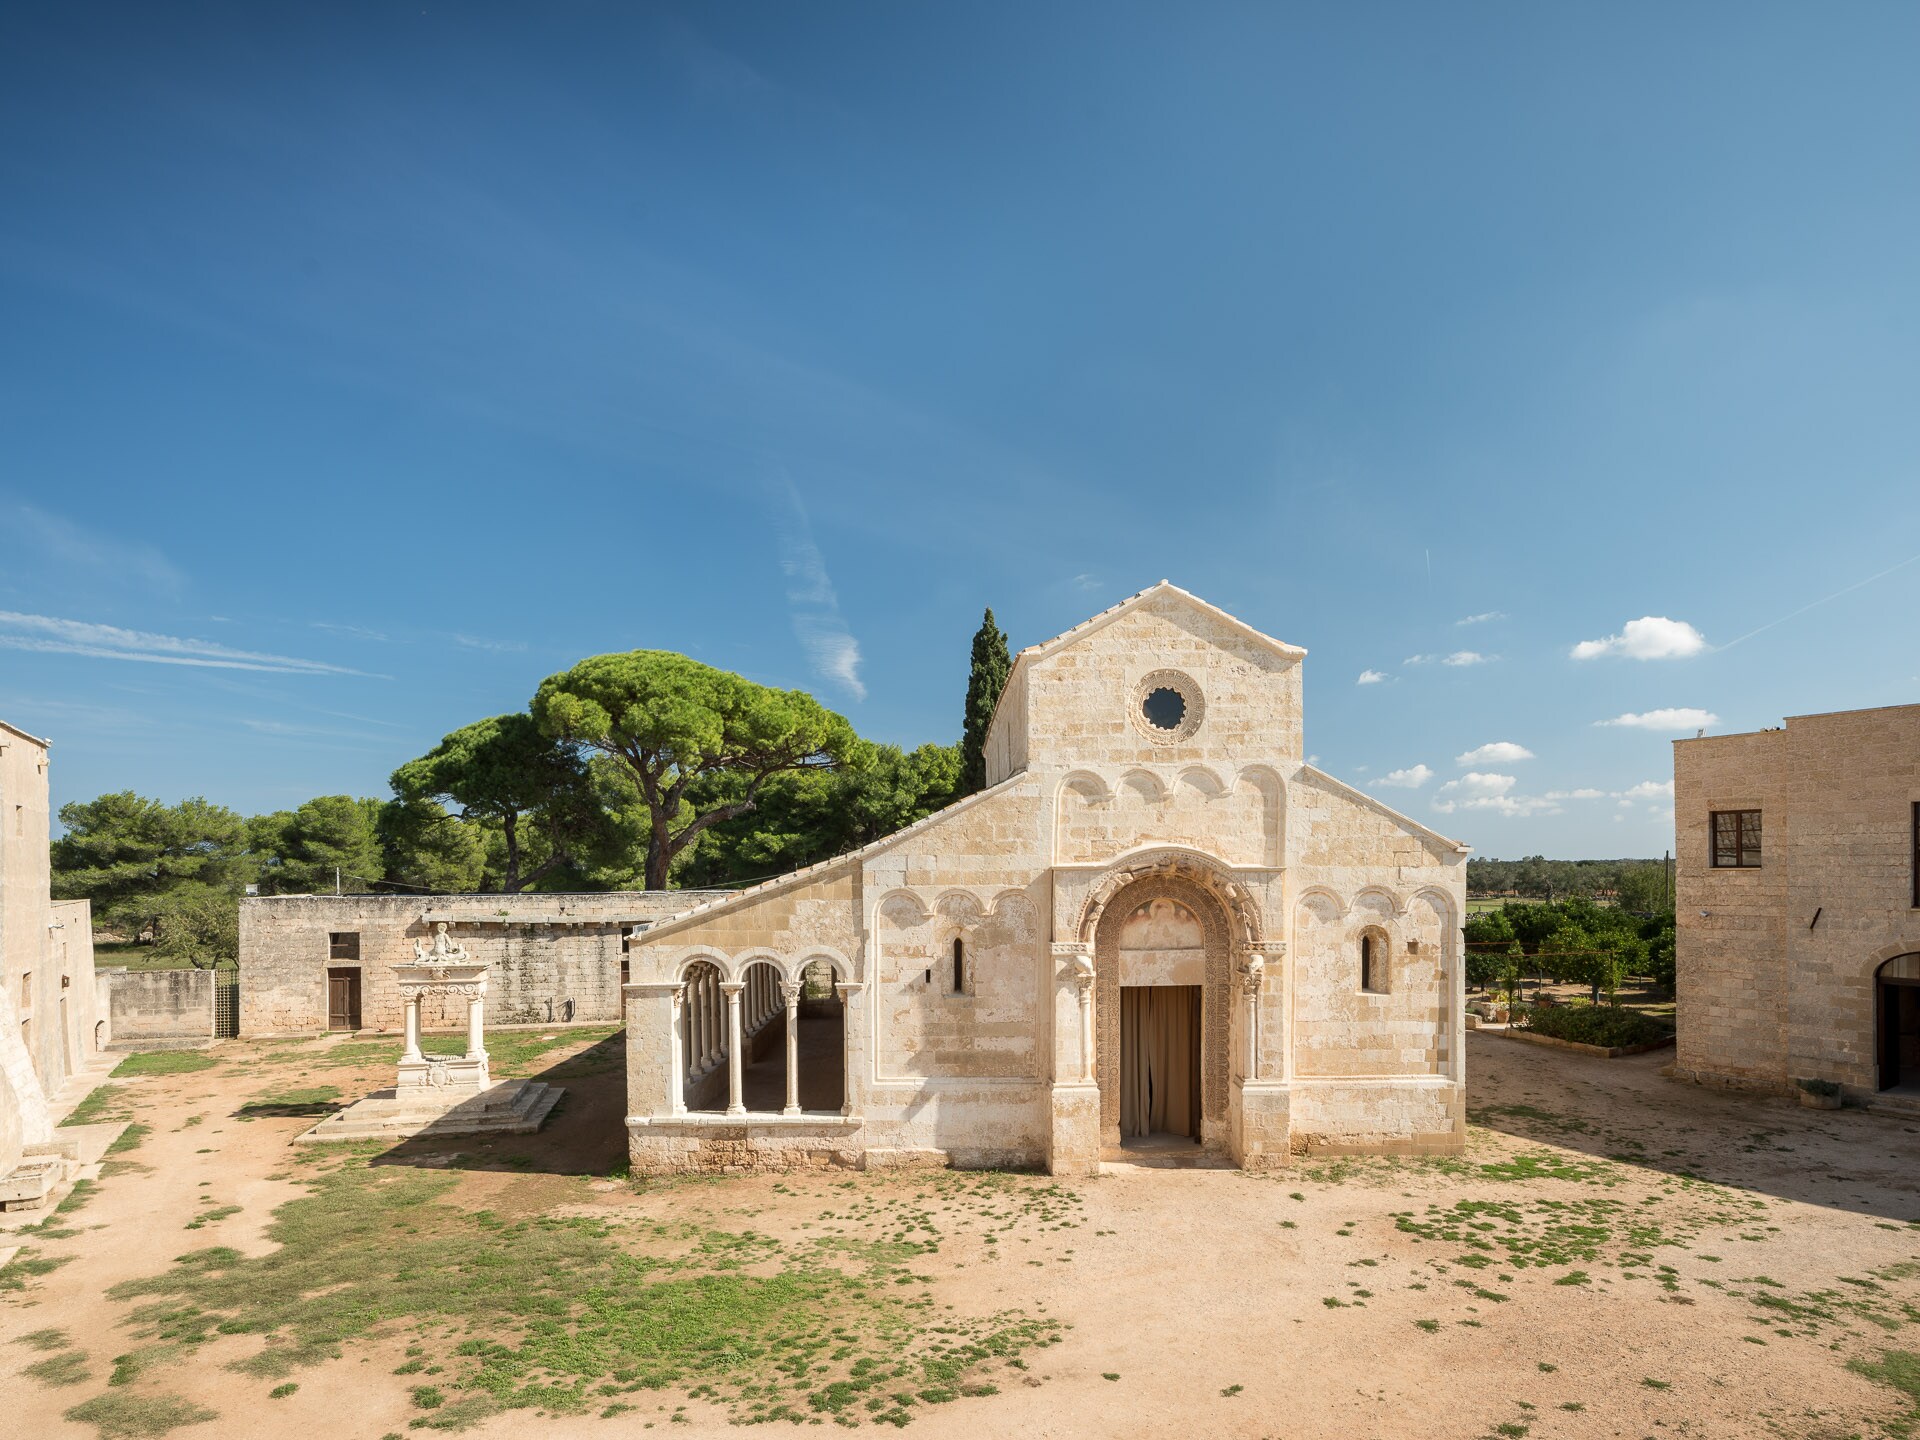 Abbazia di Santa Maria di Cerrate, Lecce; facciata della Chiesa con il Portico duecentesco dopo il secondo lotto di restauri del 2018